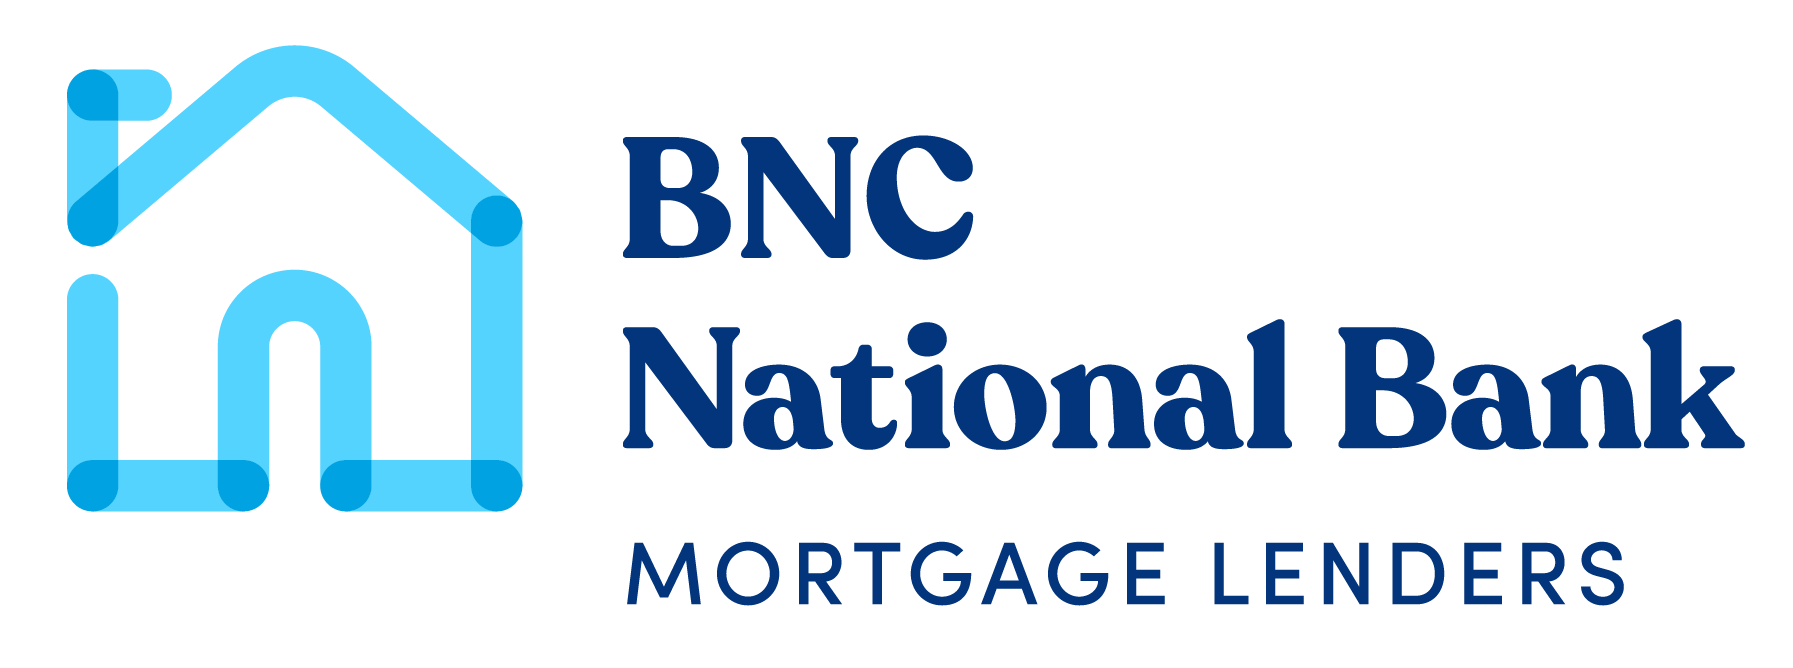 BNC National Bank Mortgage Reviews September 2021 | Credit Karma